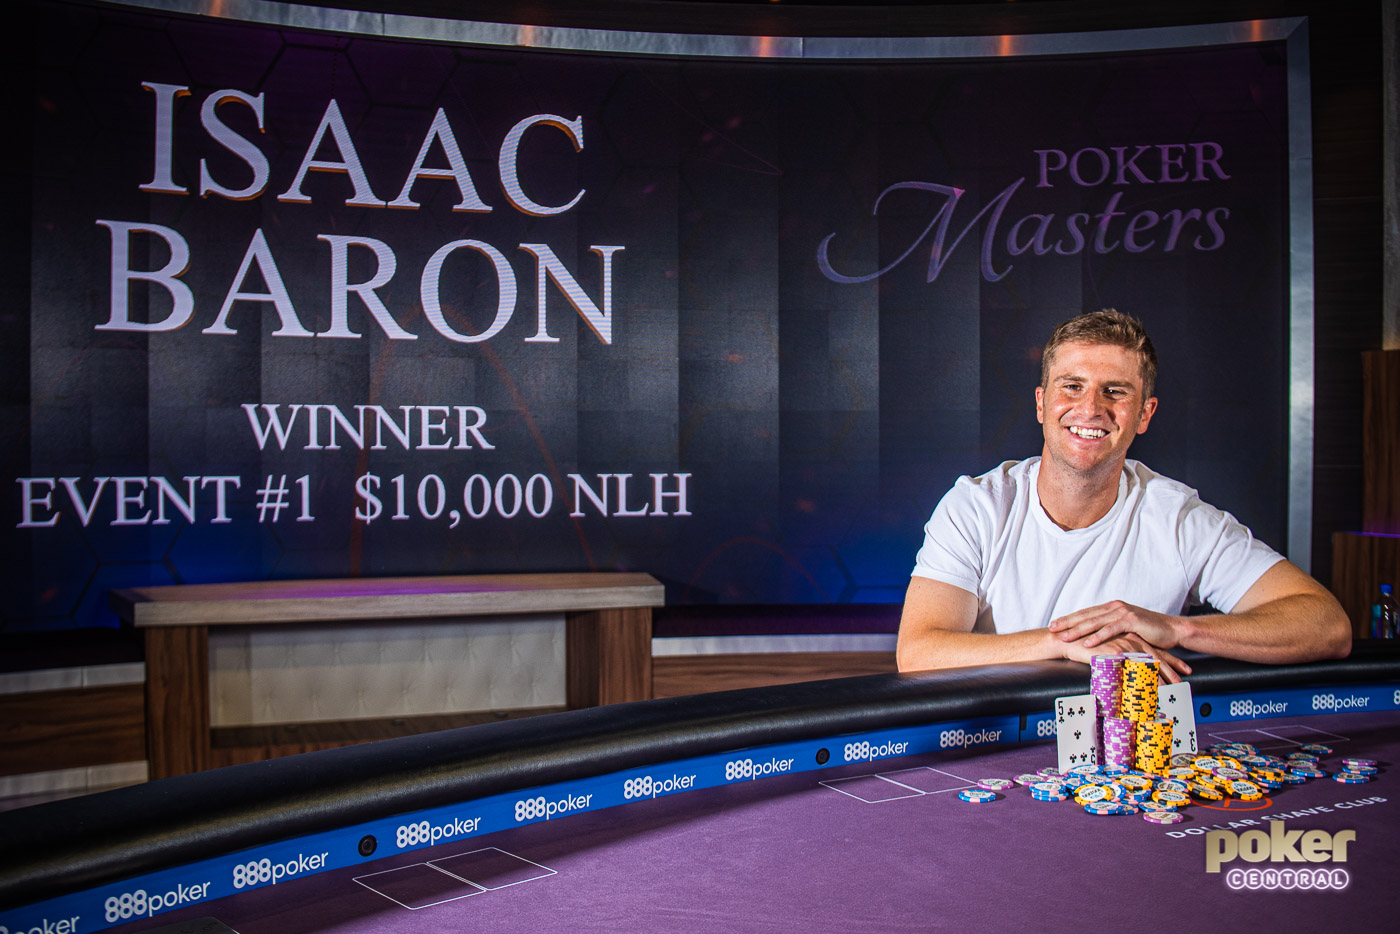 Isaac Baron Poker Masters